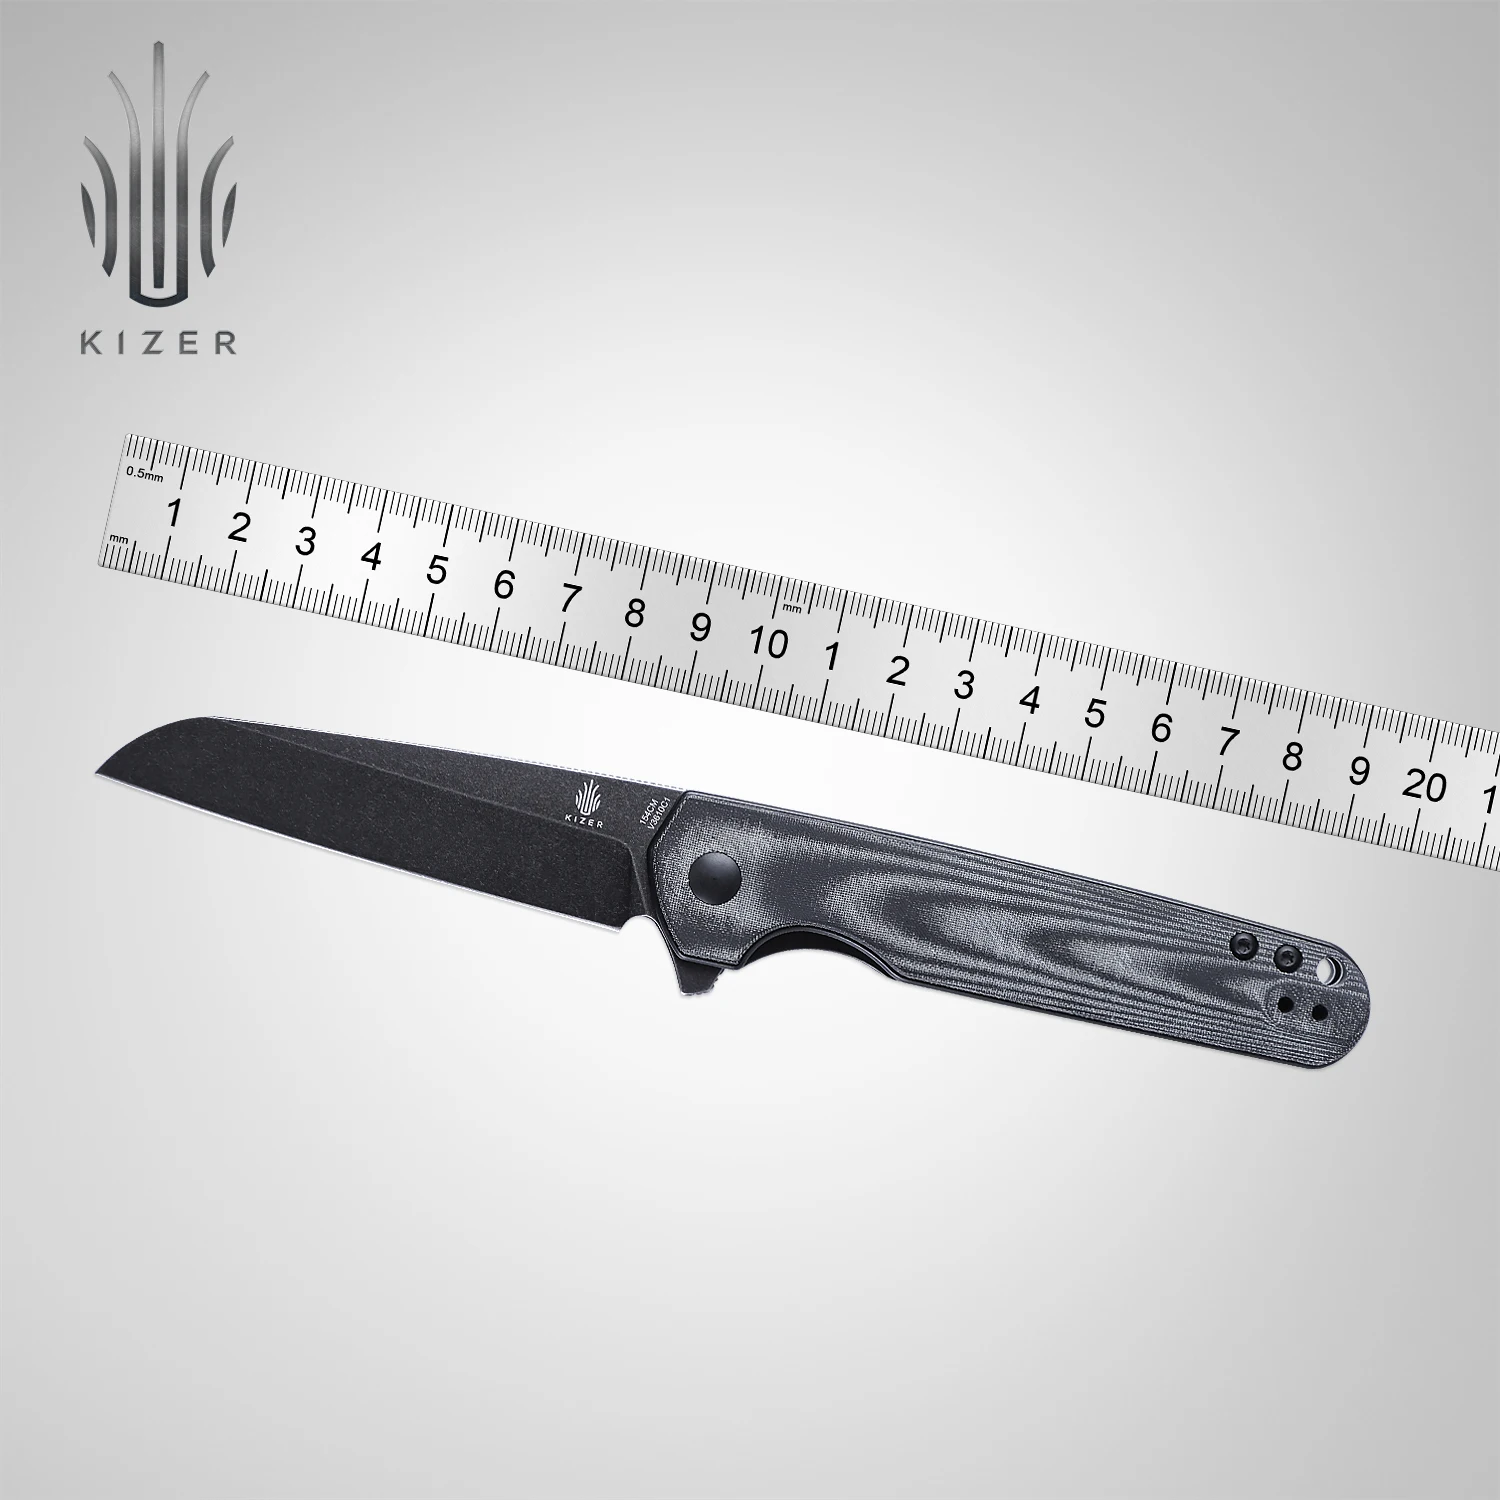 Kizer Hunting knife V3610C1/V3610C2 LP 2022 New Flipper Pocket Knife with Black Micarta or Transparent G10 Handle Camping Tools